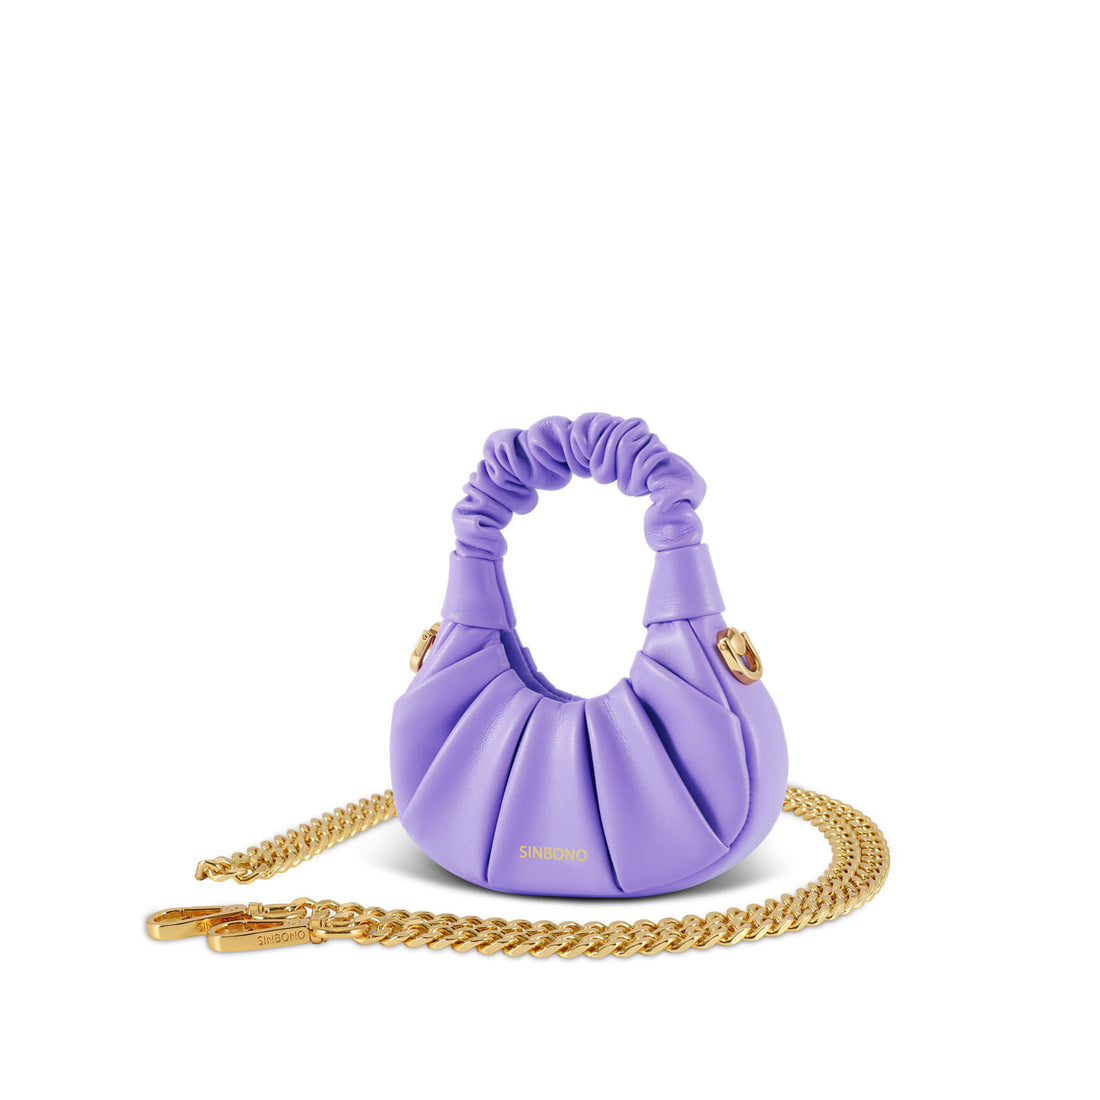 SINBONO Mini Ava Vegan Handbag Purple